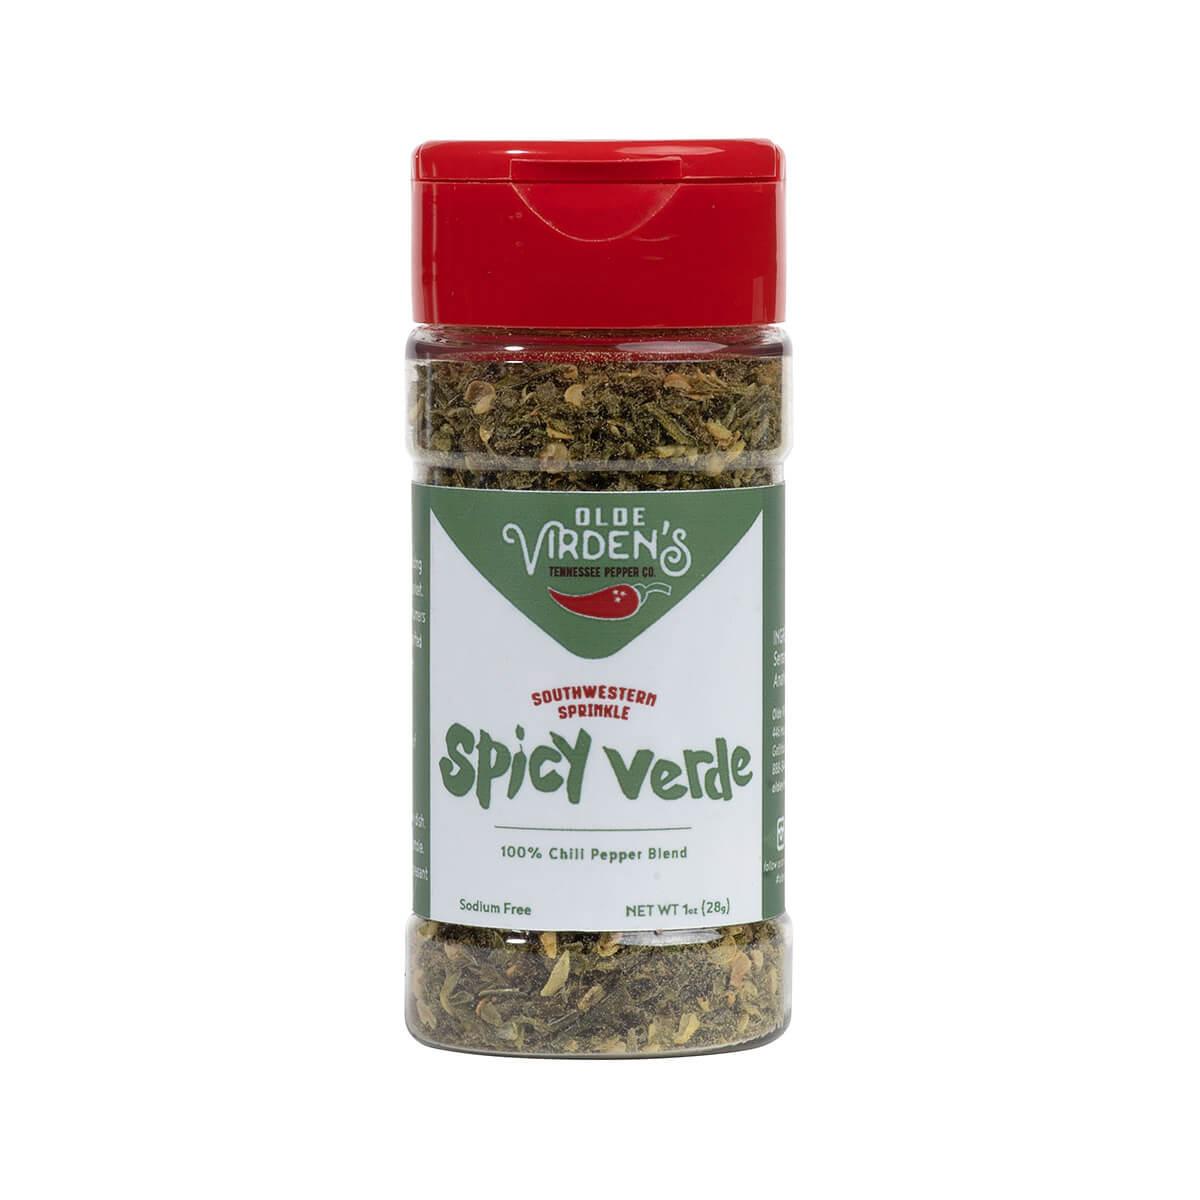  Spicy Verde Sprinkle Seasoning